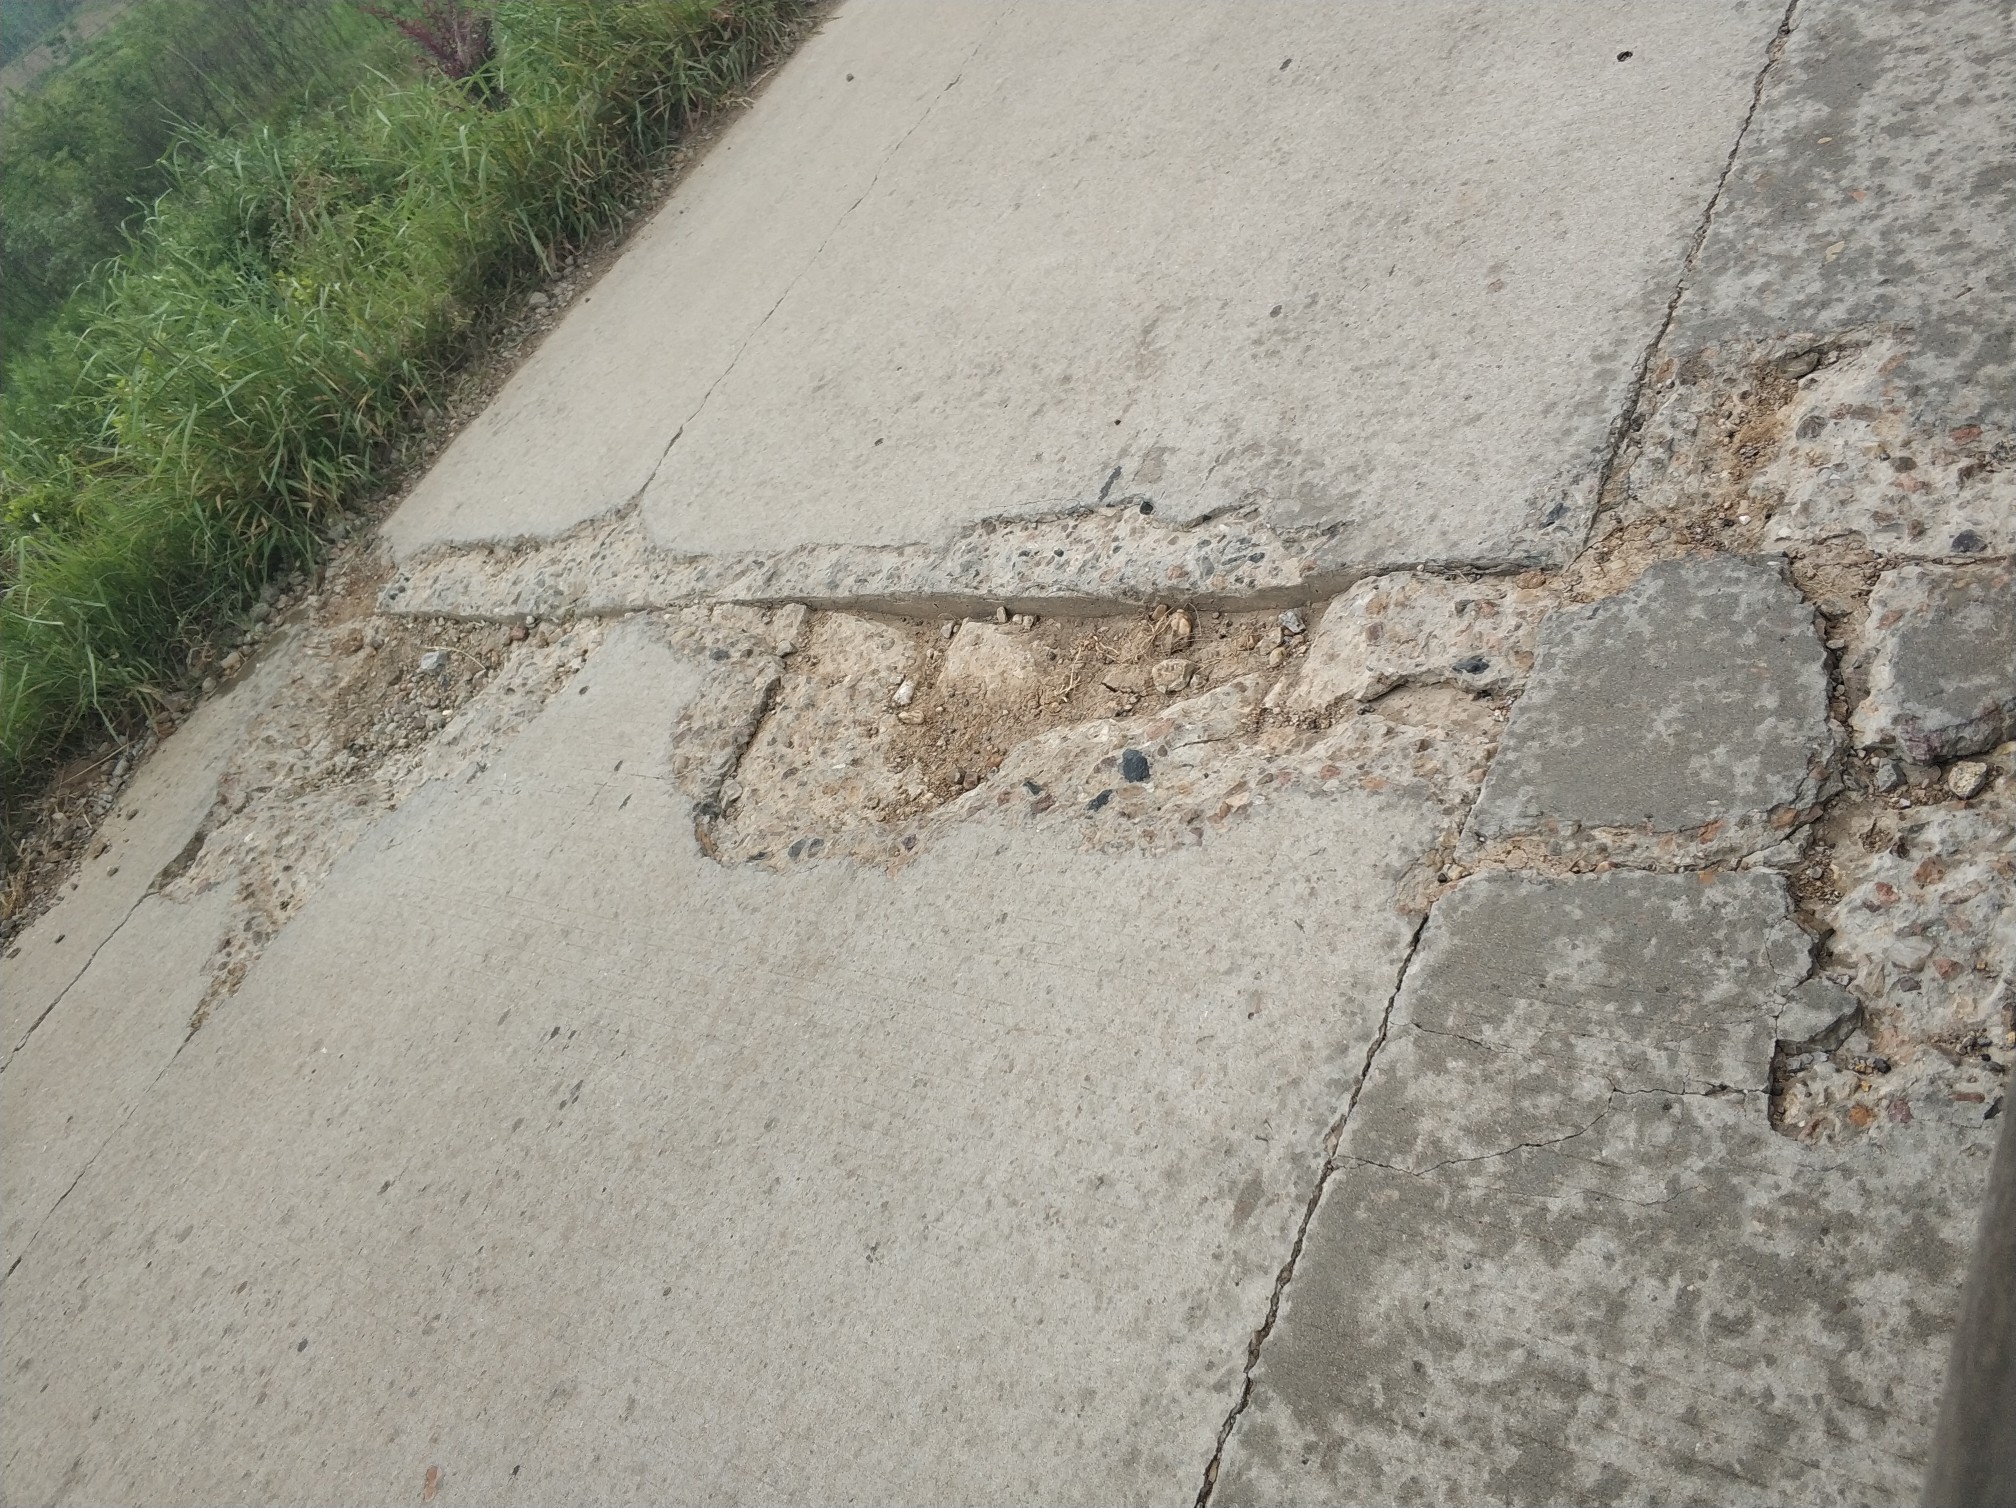 沿淠河水泥路破损严重,水泥墩子安全隐患